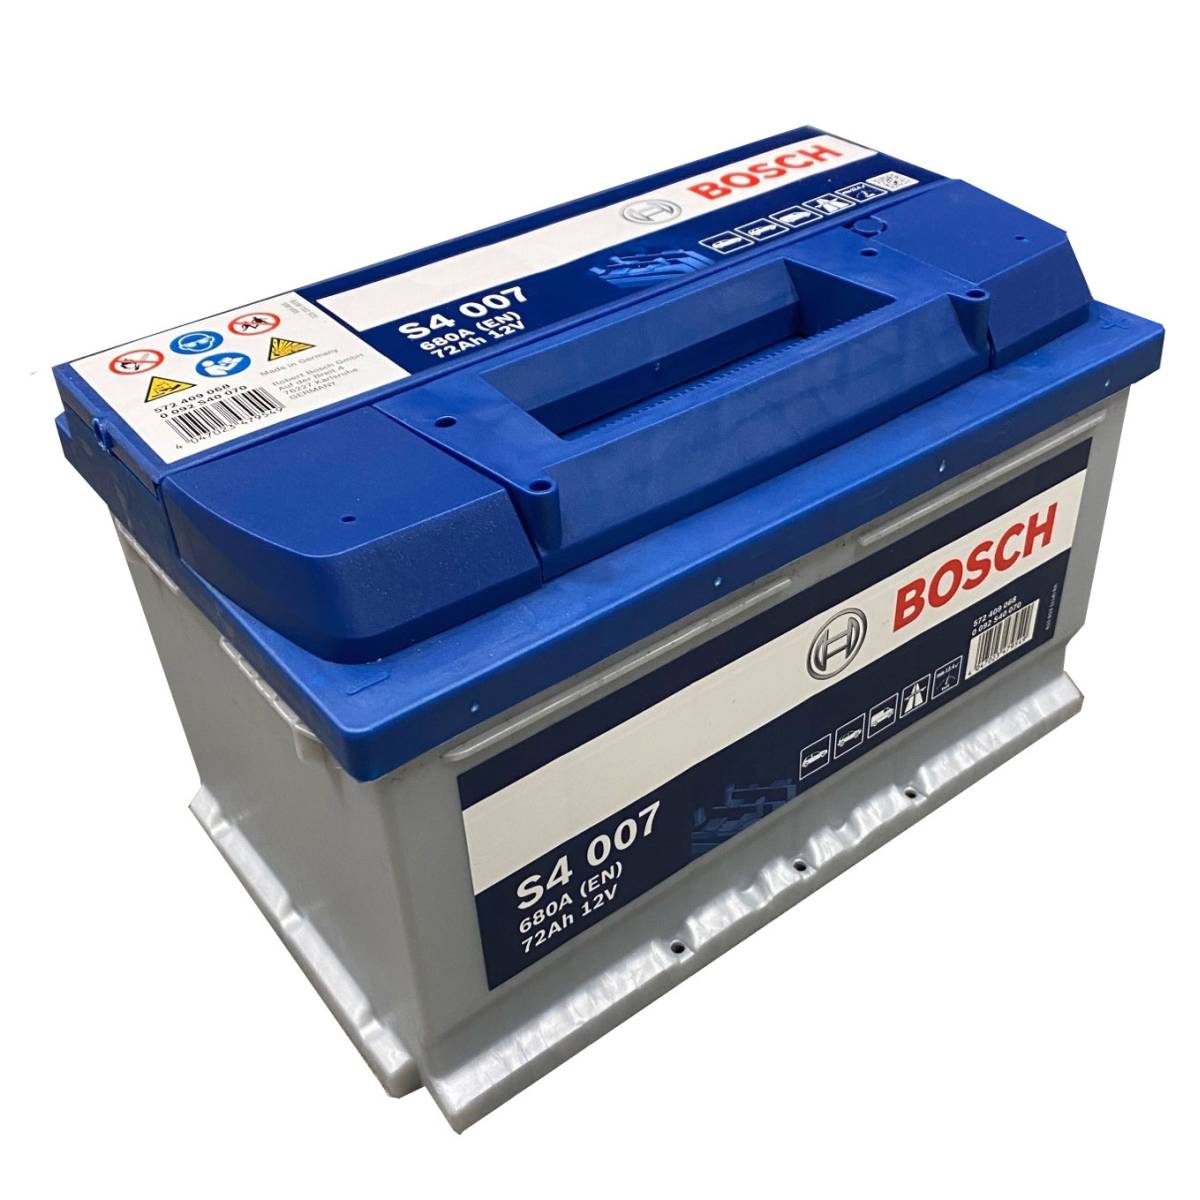 Bosch S4 007 car battery12V 72 Ah 680A, Starter batteries, Boots & Marine, Batteries by application